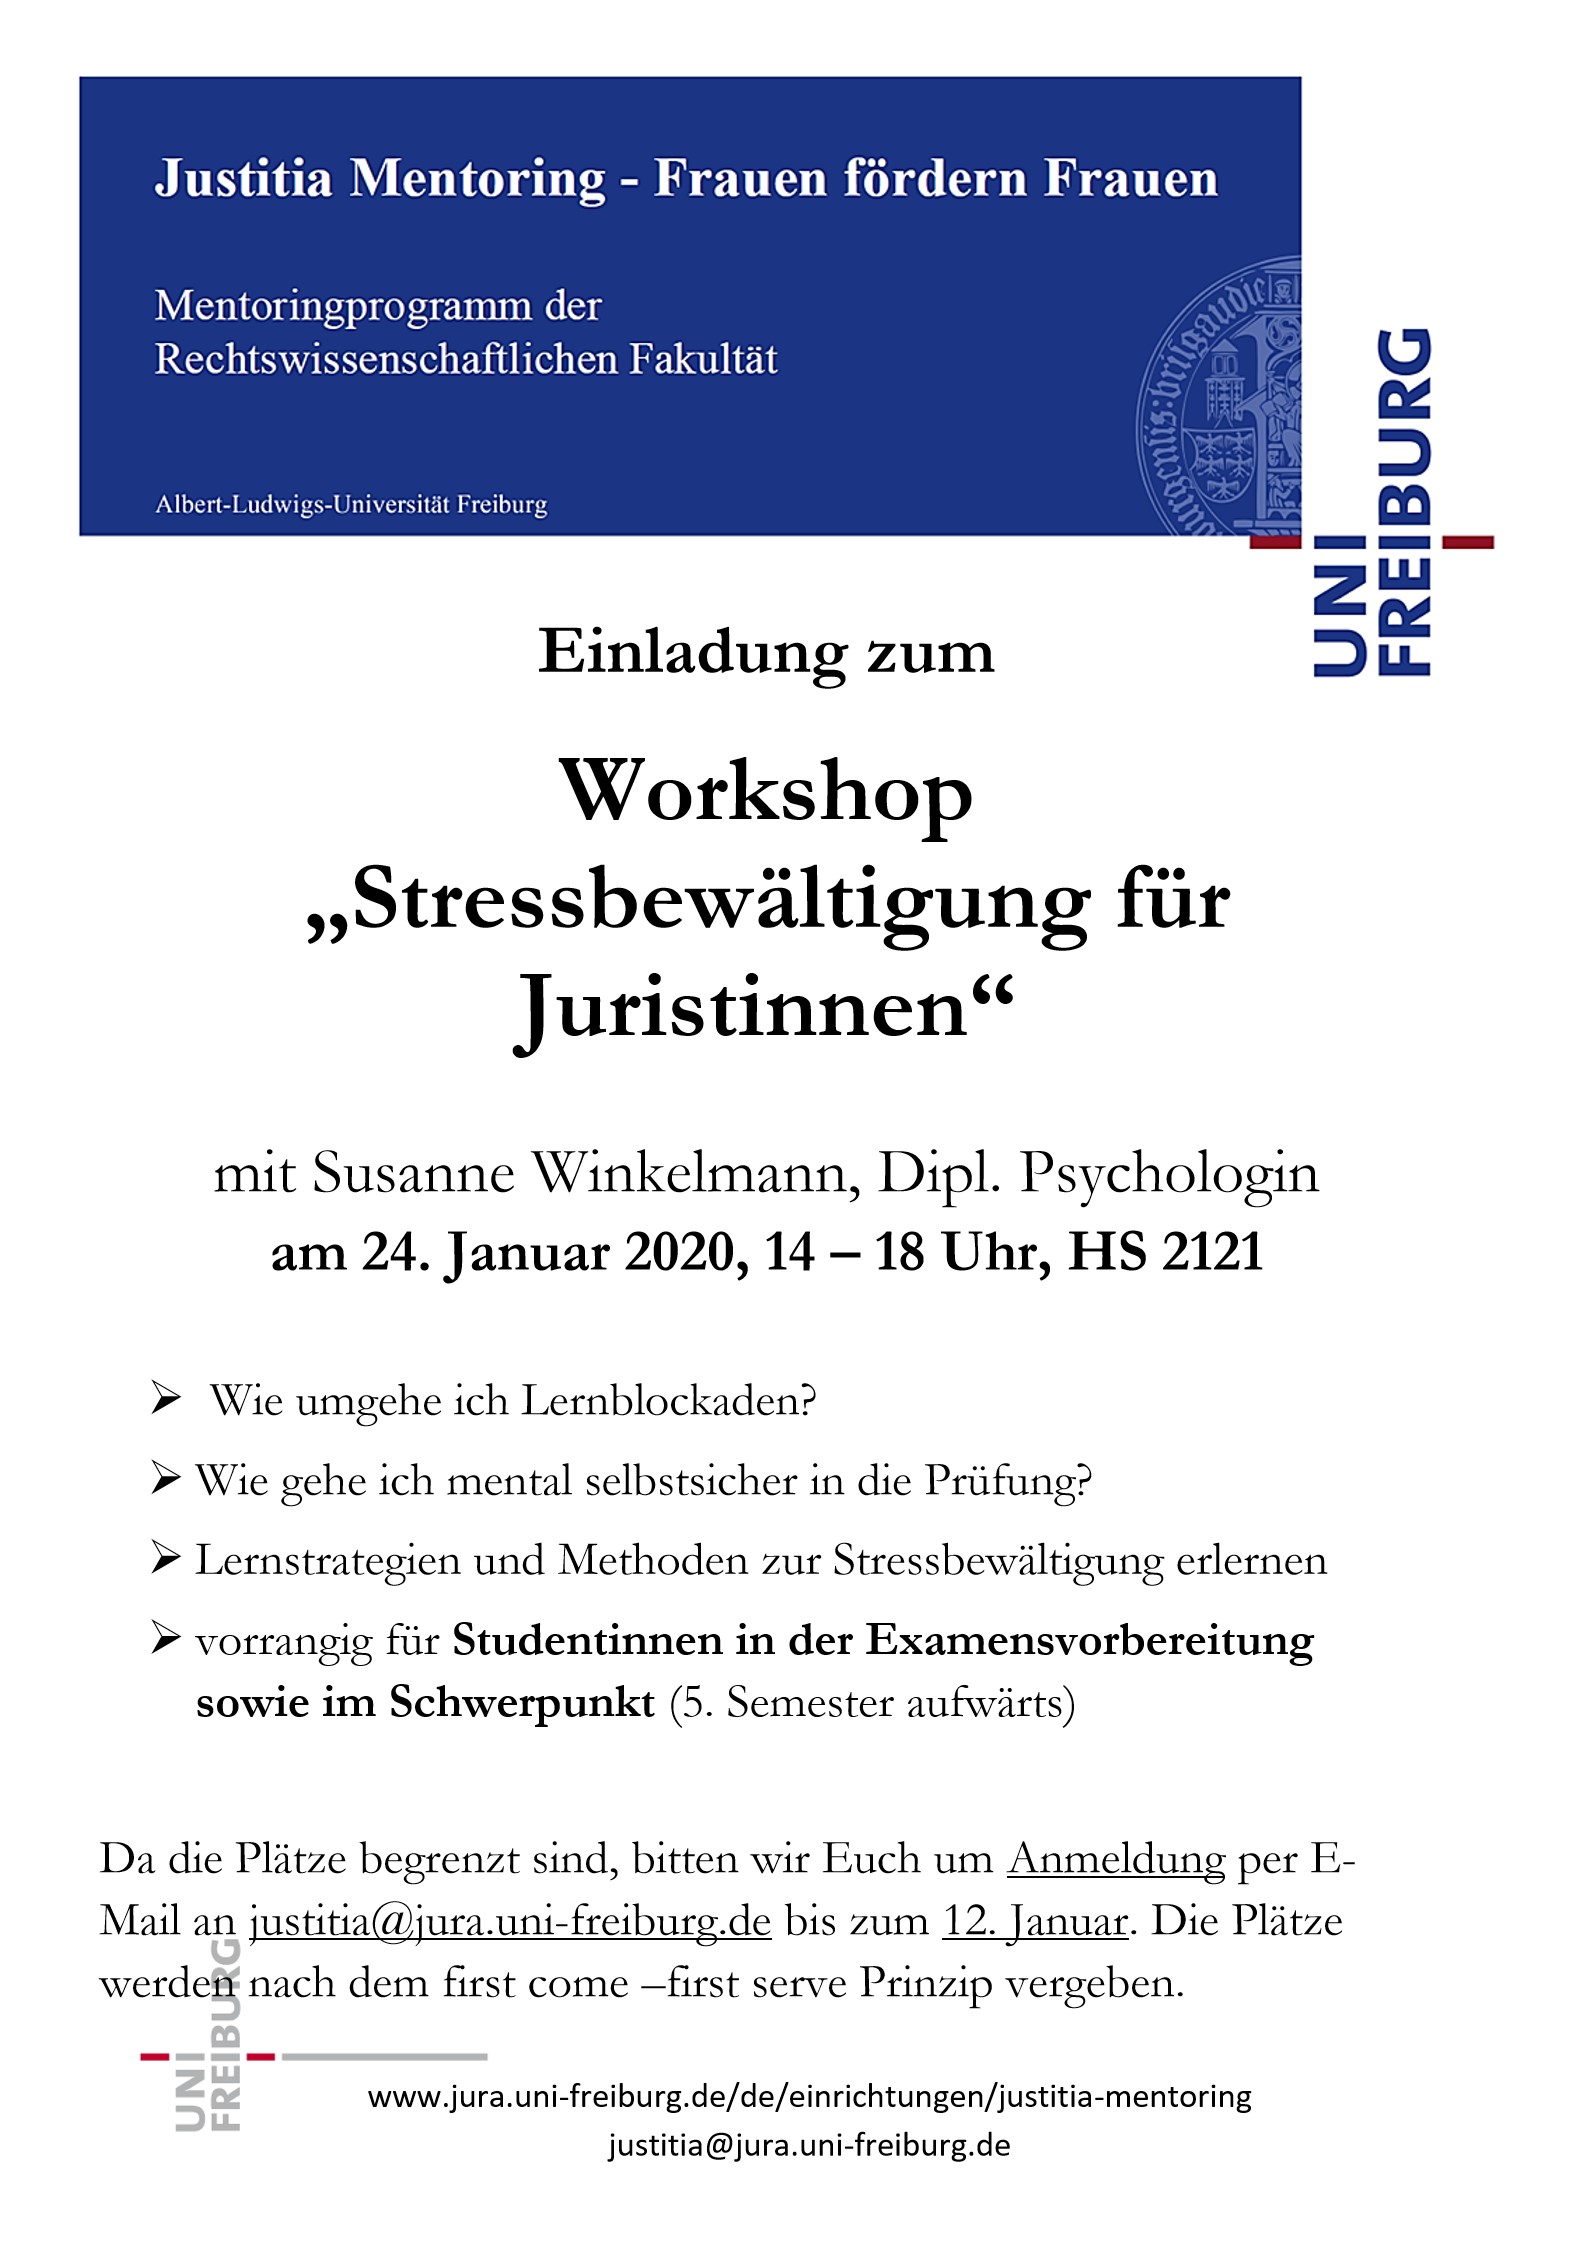 Workshop "Stressbewältigung"